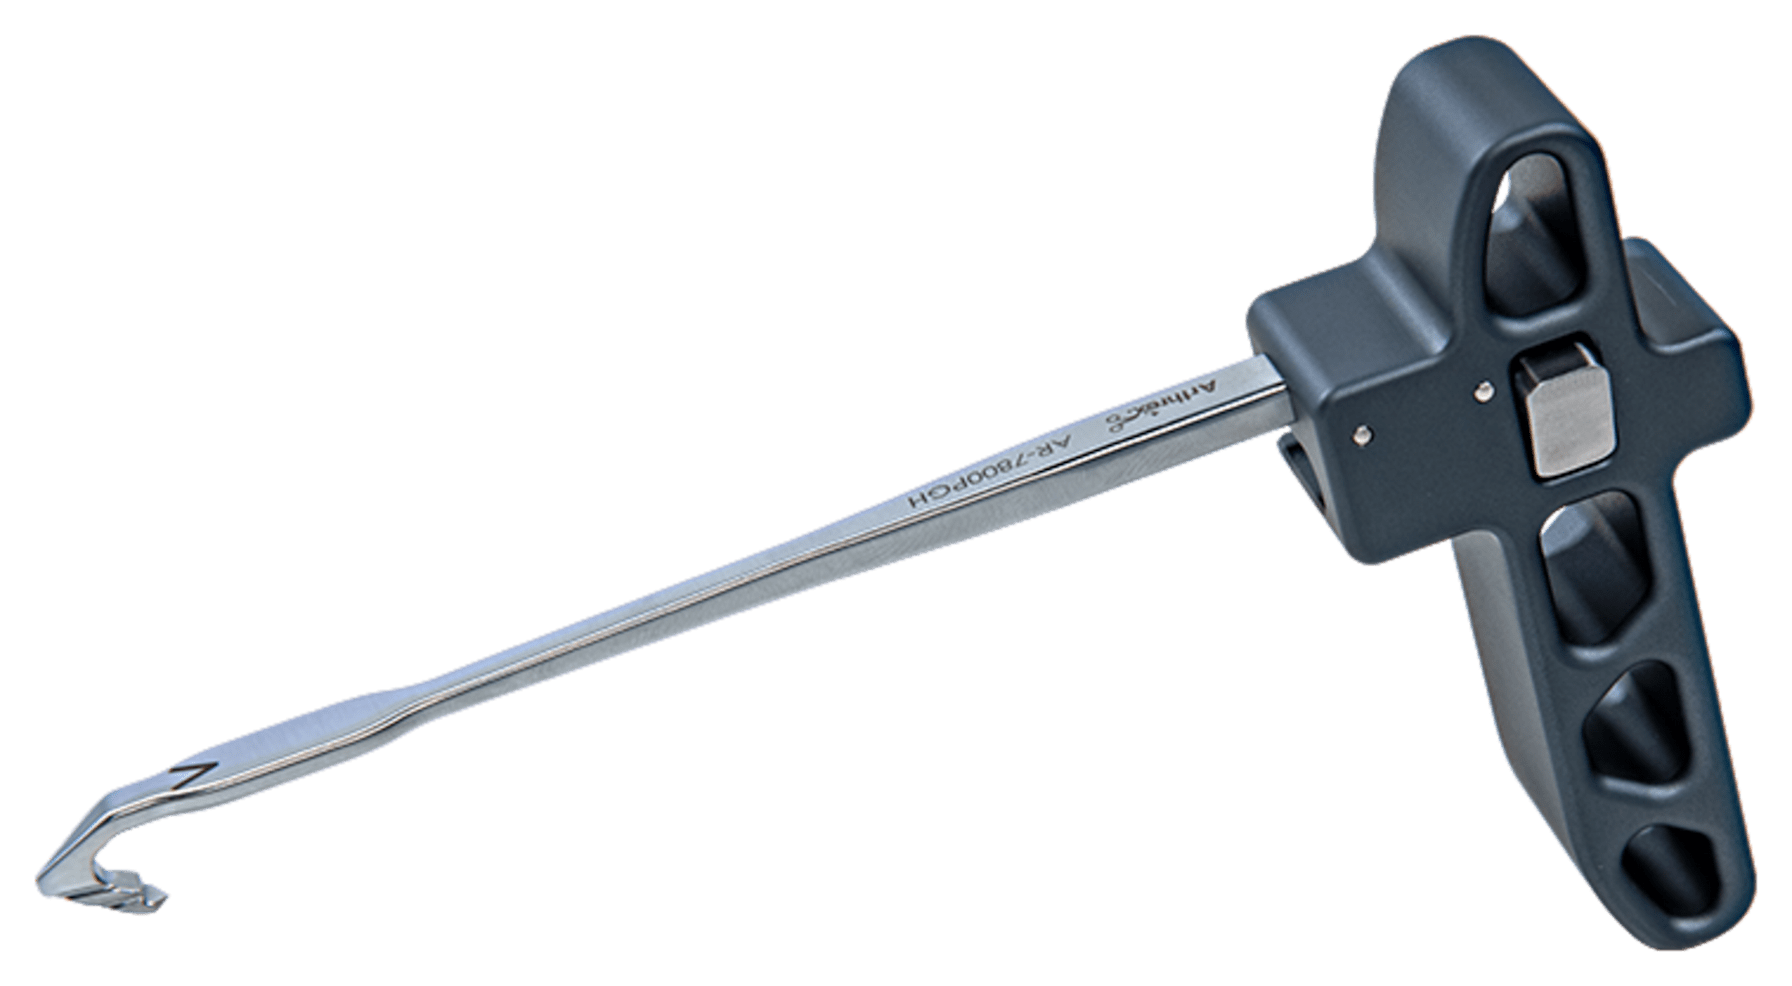 Parallel-Zielinstrument, Handgriff mit Haken, für posteriore Instabilität